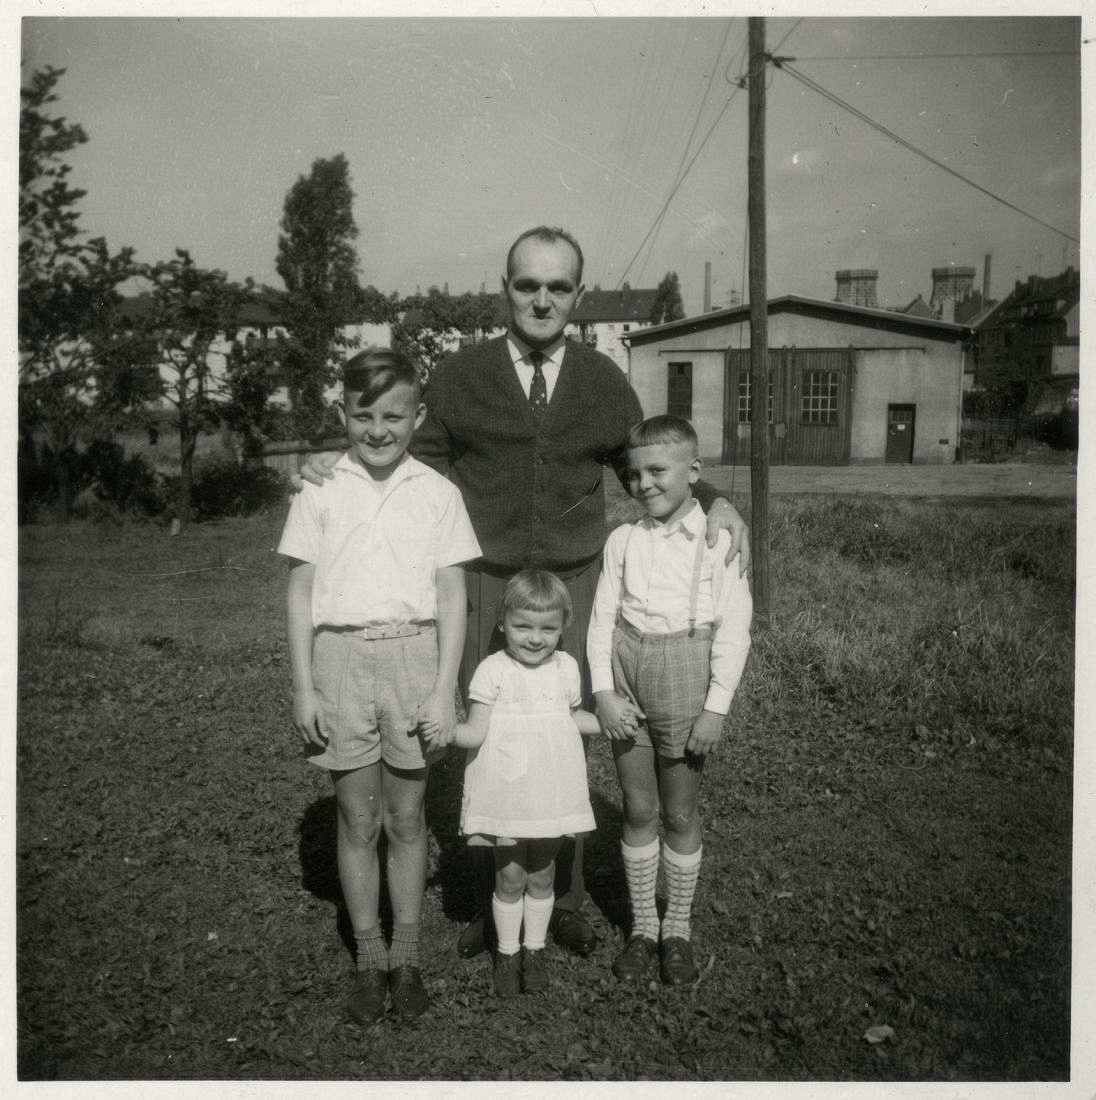 Fotografie, schwarzweiß. Zwei Jungen stehen auf einer Wiese. Zwischen ihnen steht ein jüngeres Mädchen, das von den beiden Jungen an den Händen gehalten wird. Hinter den Kindern steht ein Mann, der mit seinen Armen die Kinder einrahmt. 